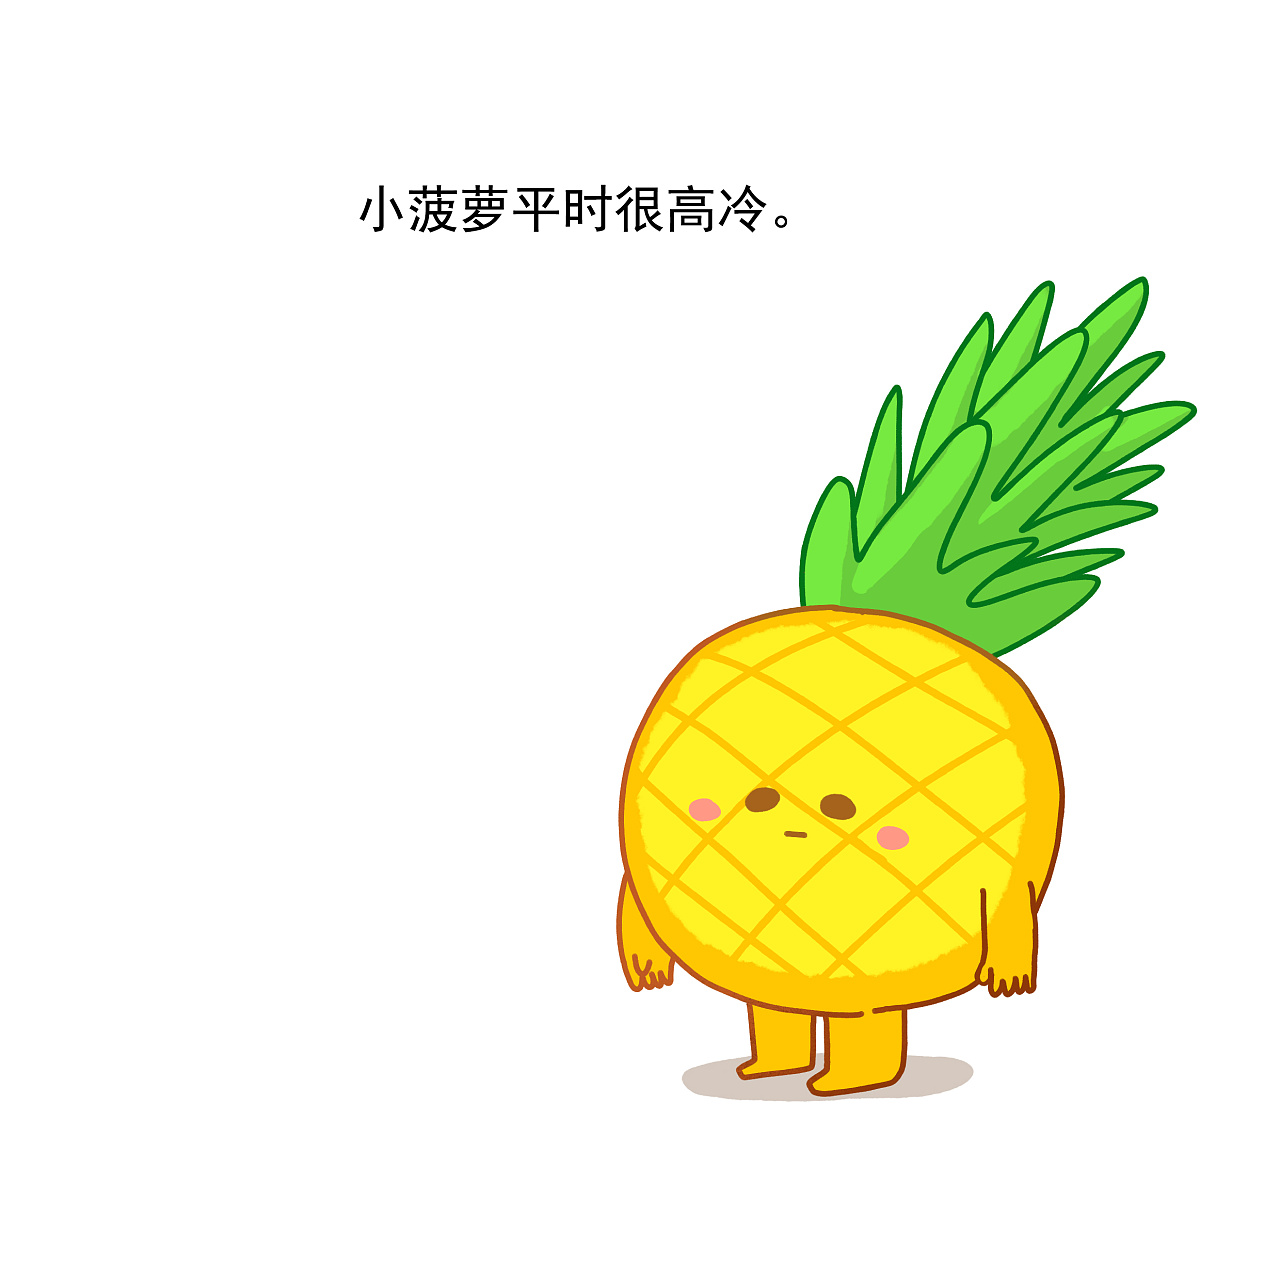 白色背景中的可爱的菠萝动画插图 向量例证. 插画 包括有 装饰, 有机, 食物, 婴孩, 滑稽, 例证 - 256440610